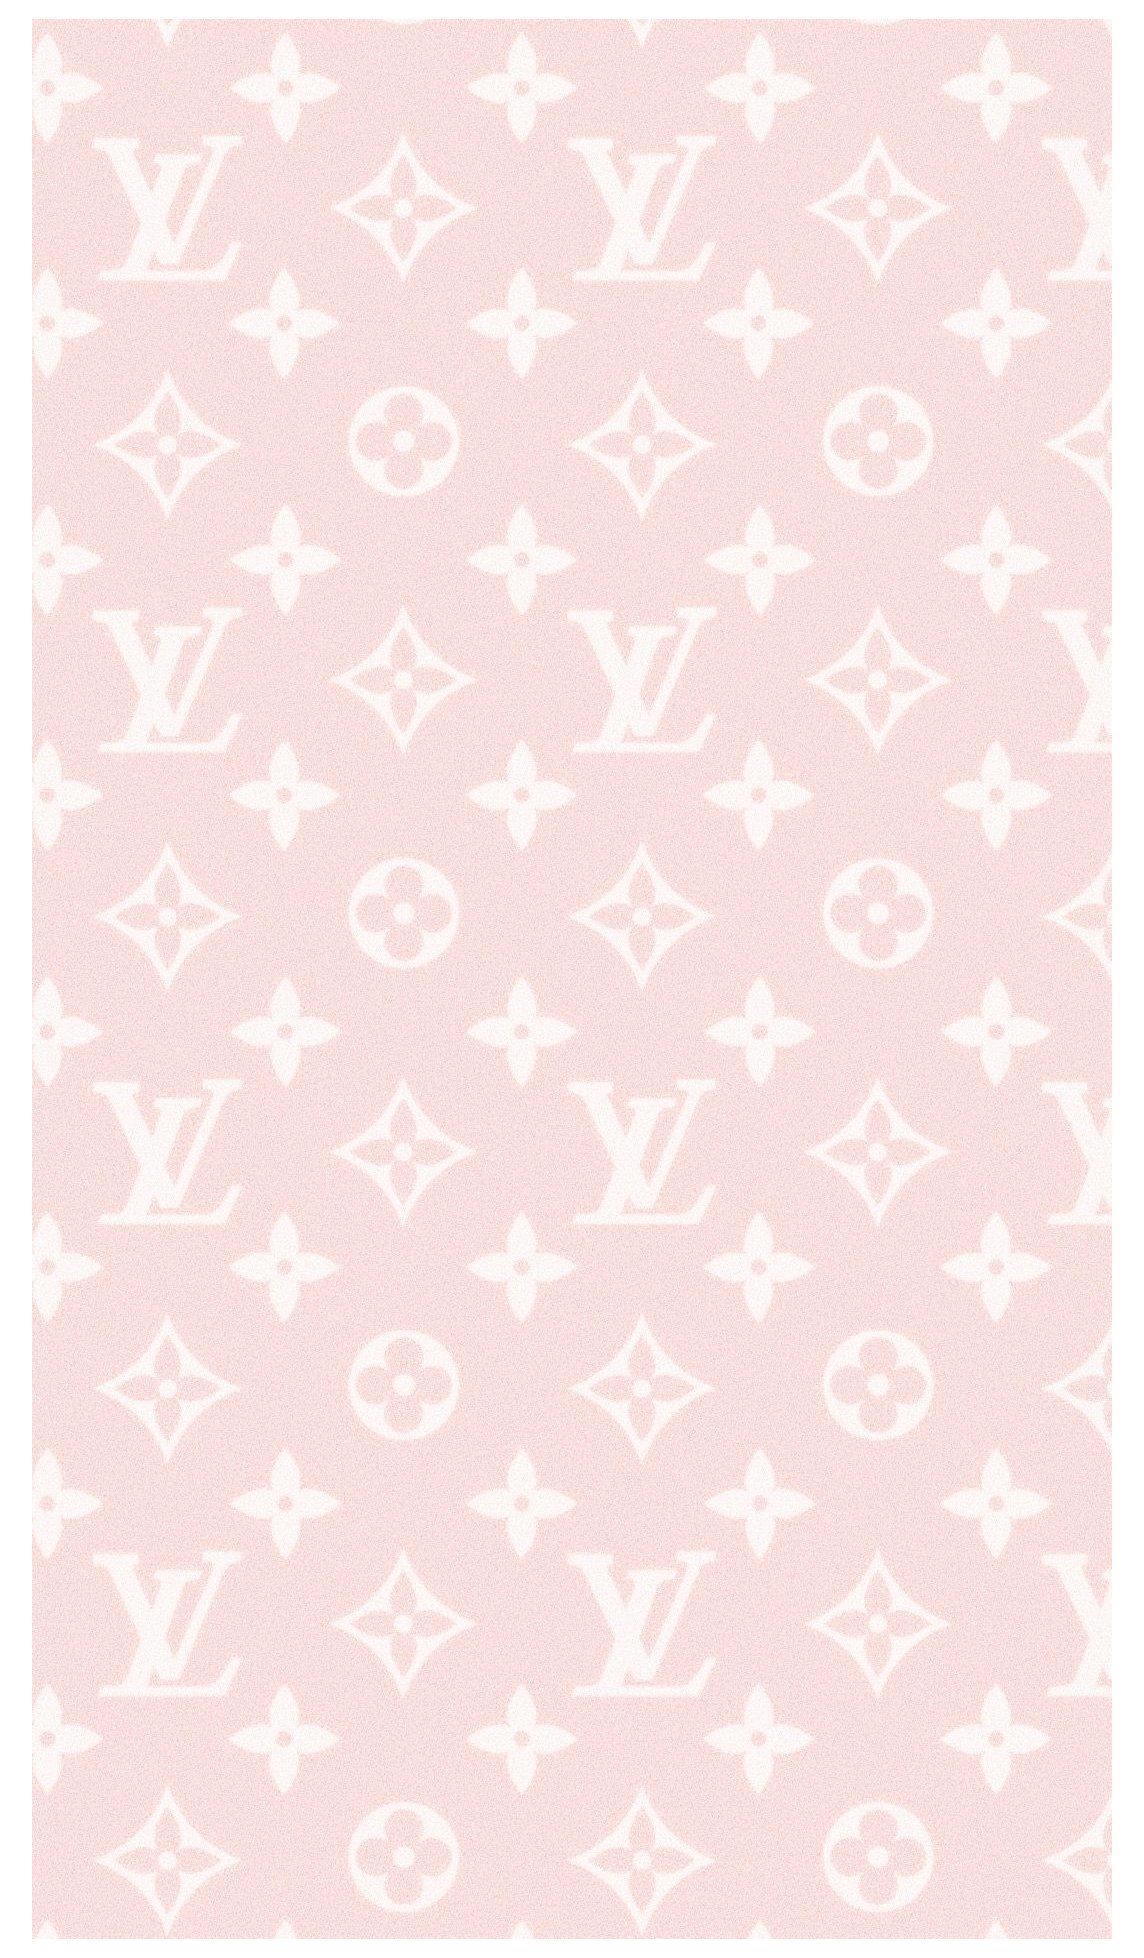 Louis vuitton wallpaper pink - Light pink, Louis Vuitton